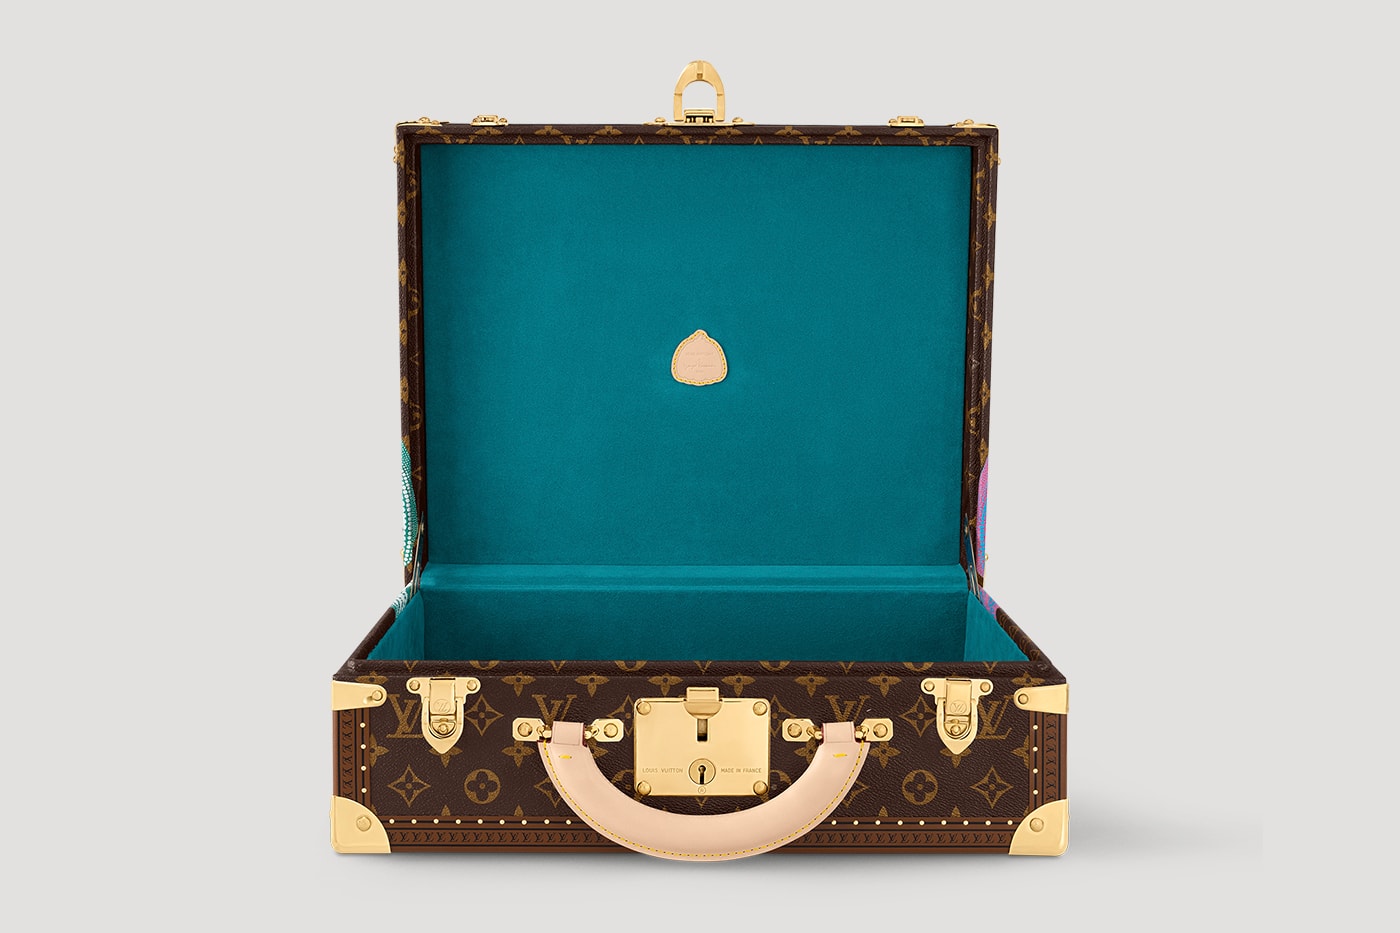 Louis Vuitton x Yayoi Kusama Second Drop Launch | Hypebeast